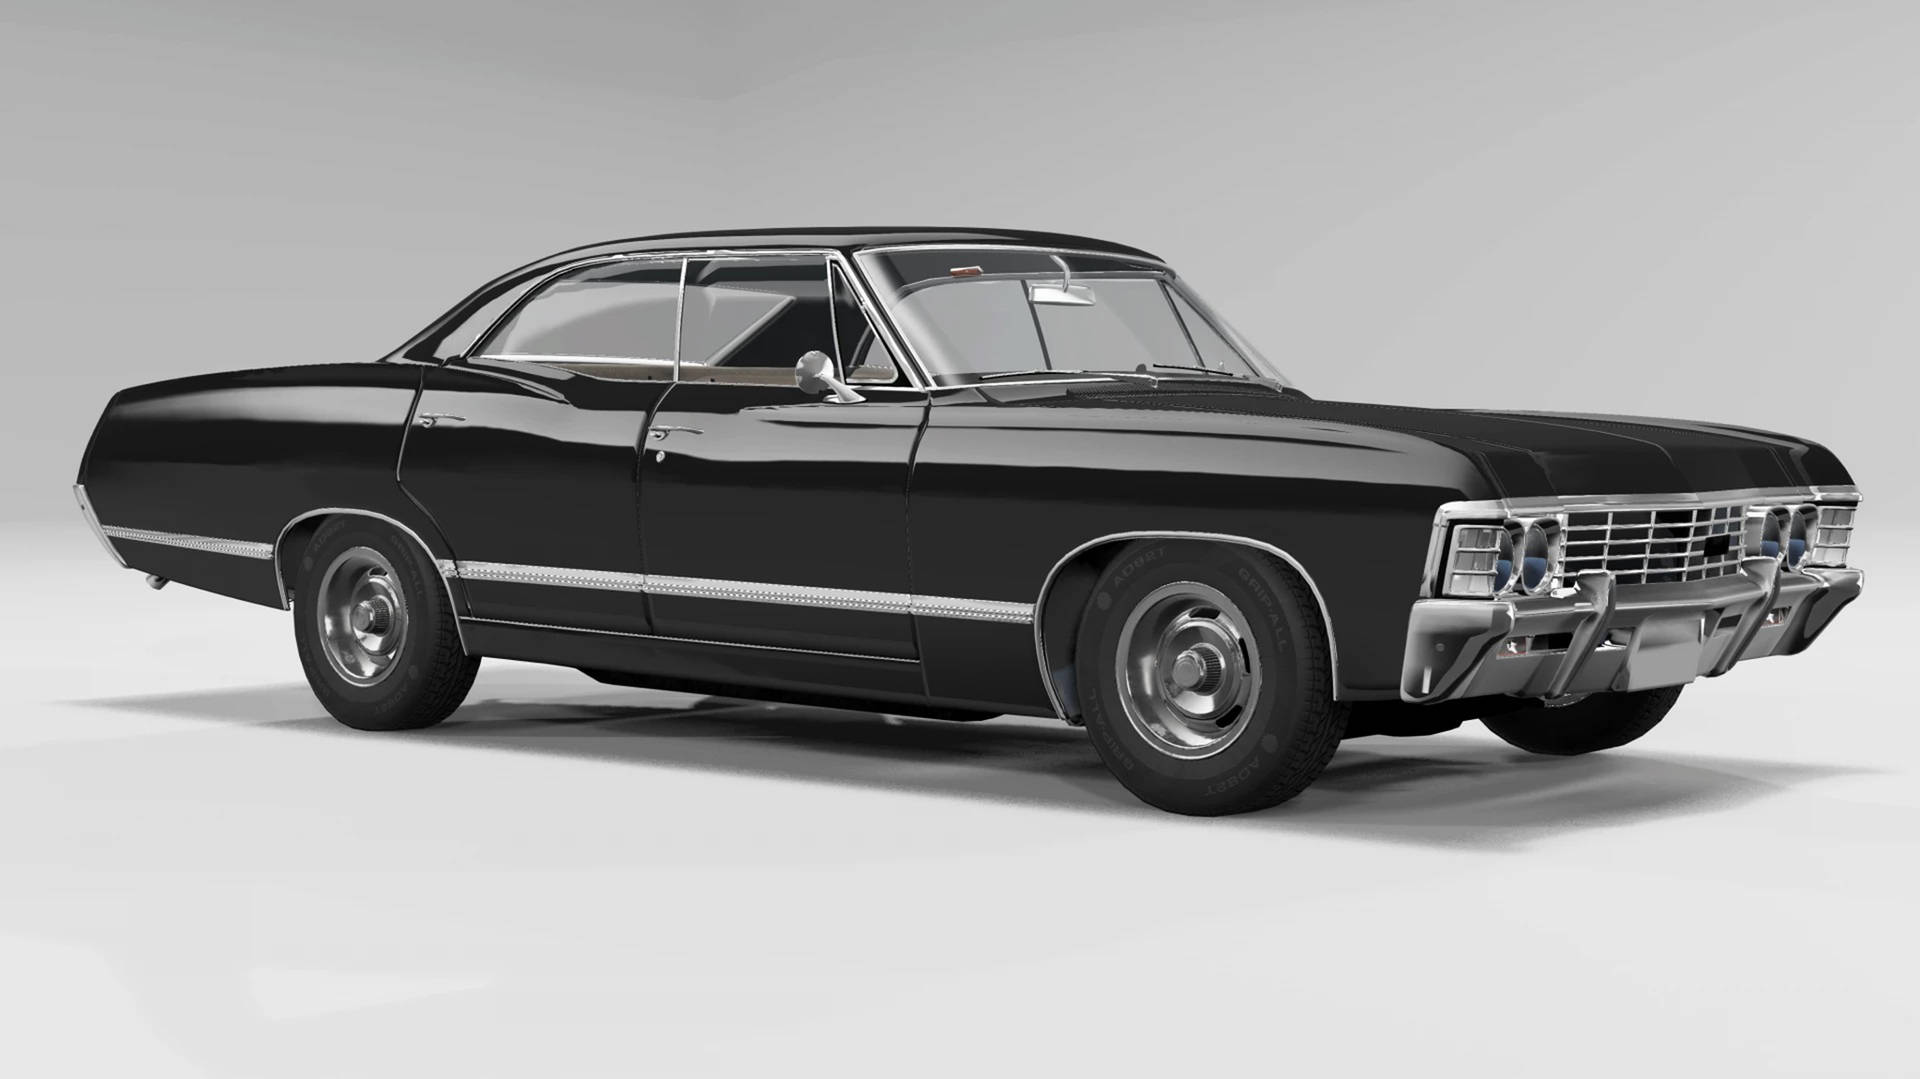 Caption: Vintage Excellence - 1967 Chevrolet Impala